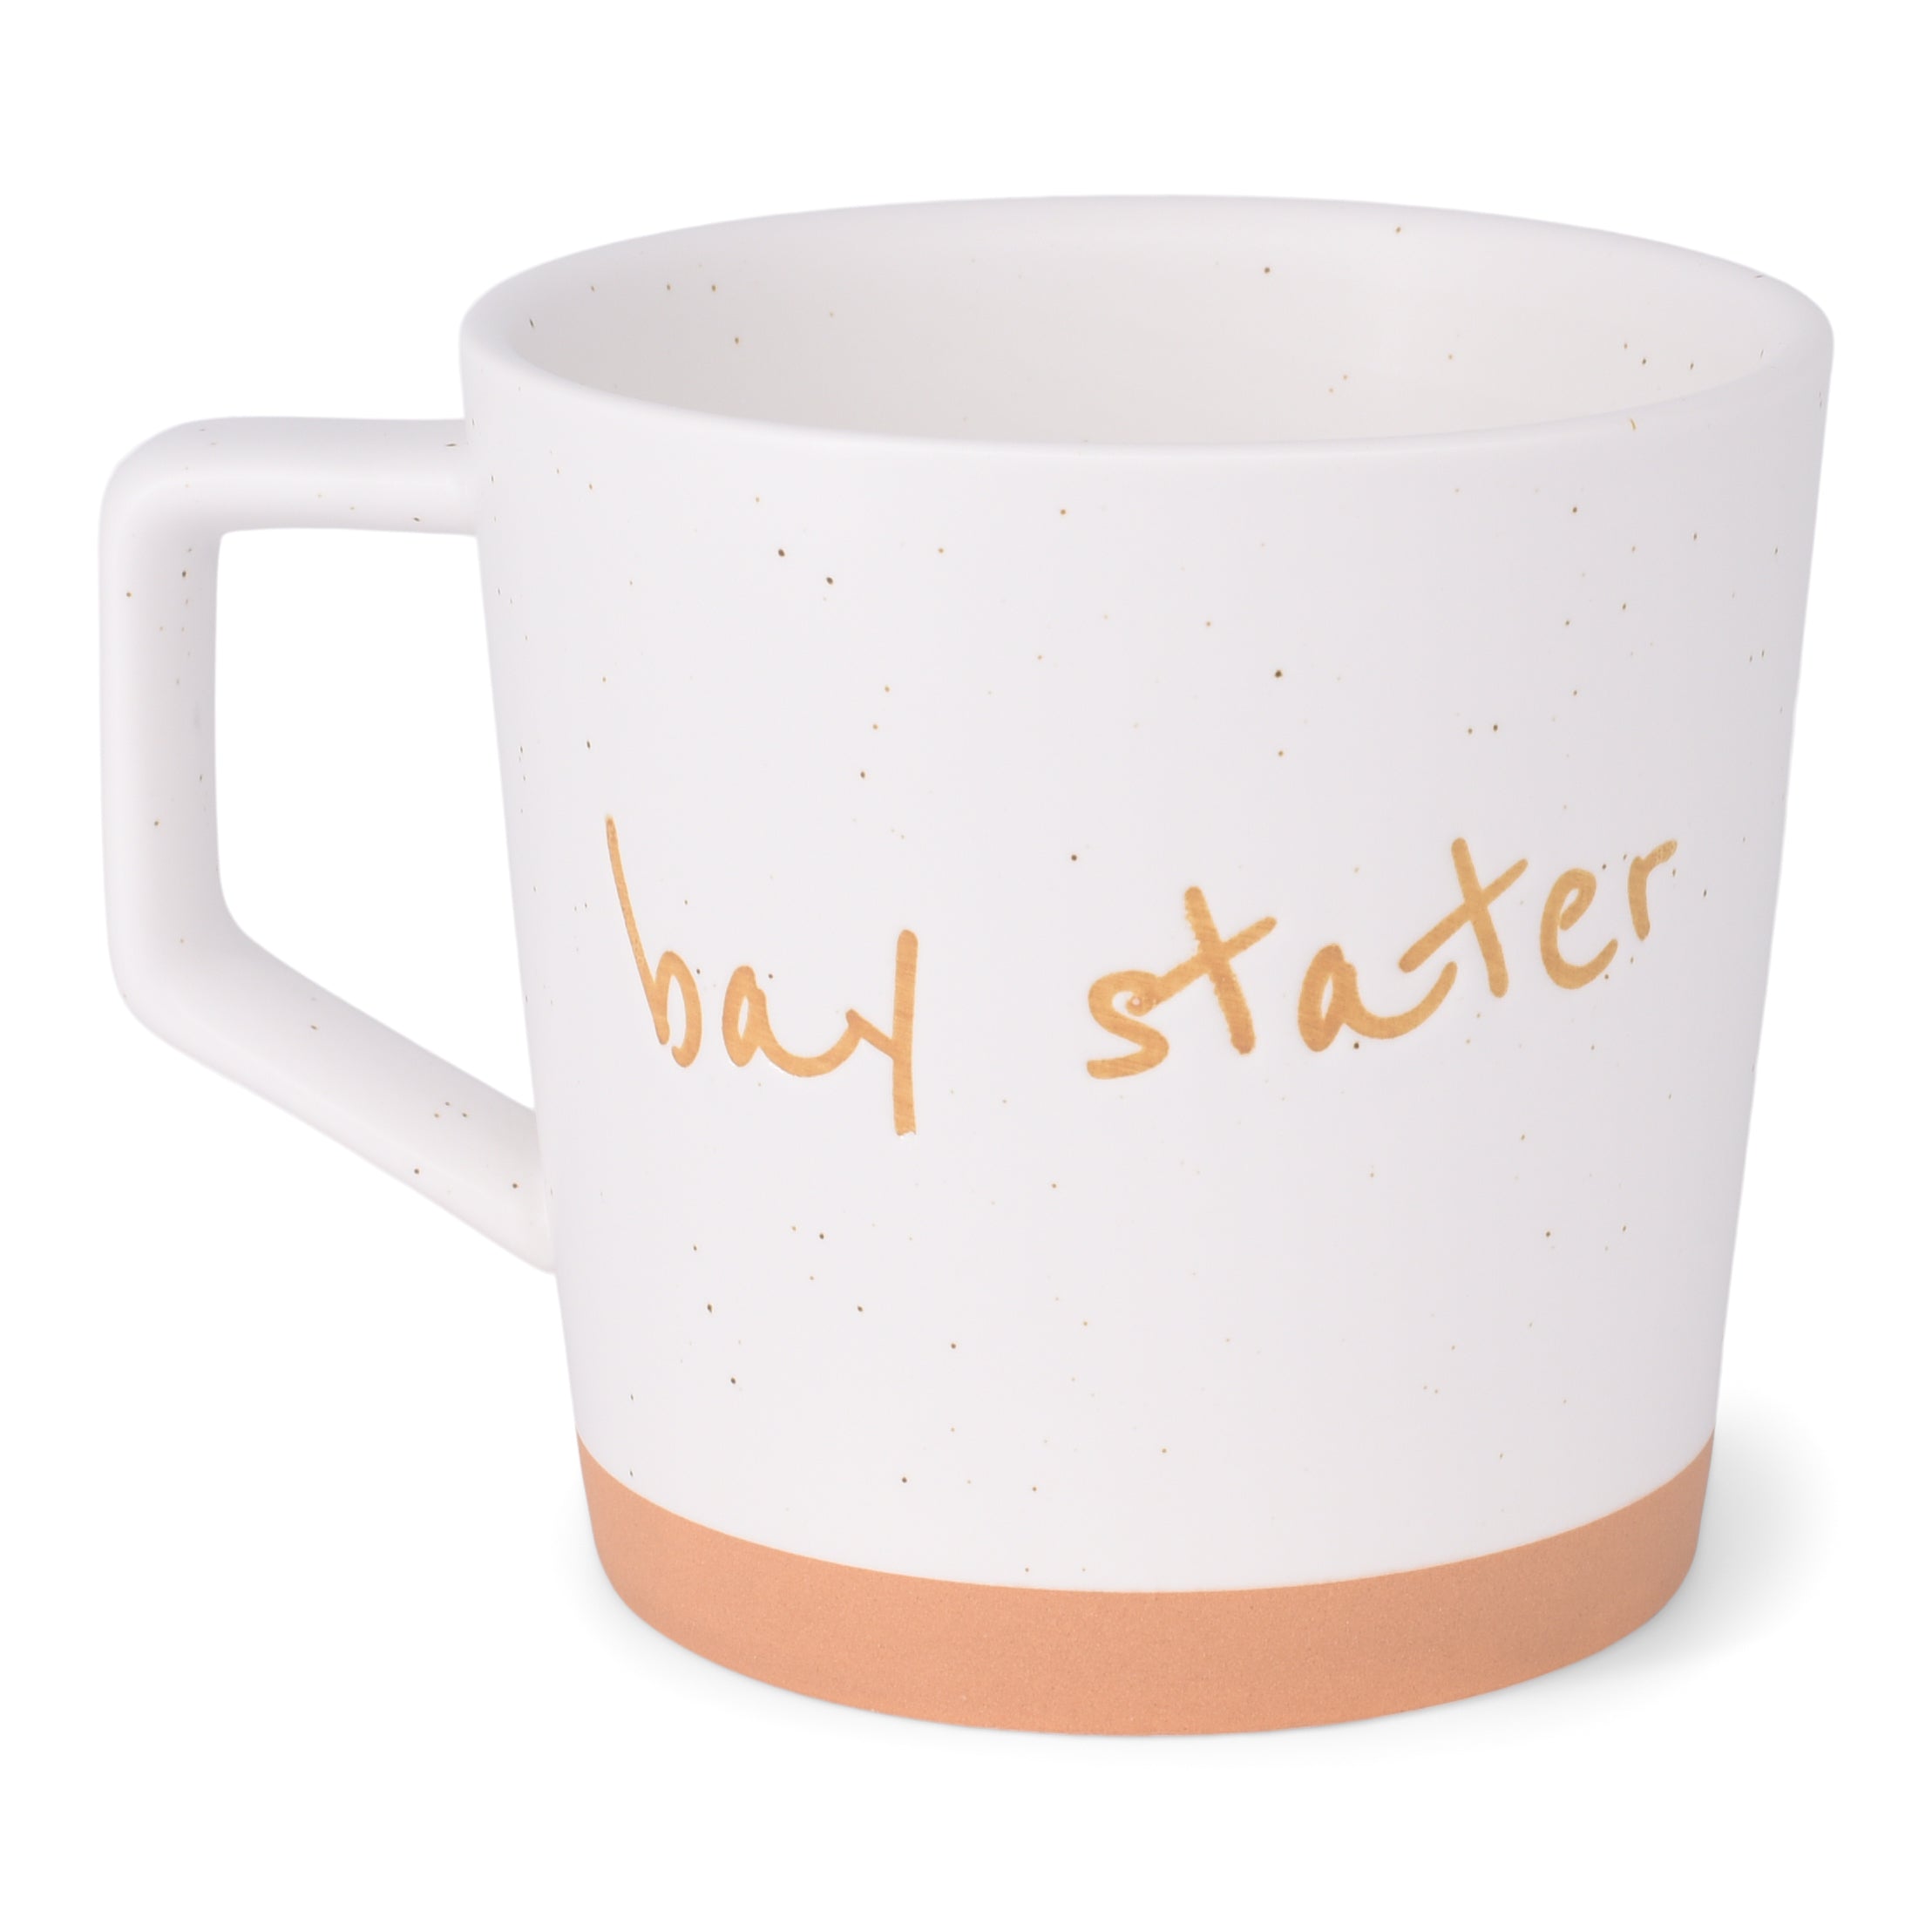 Bay Stater Mug